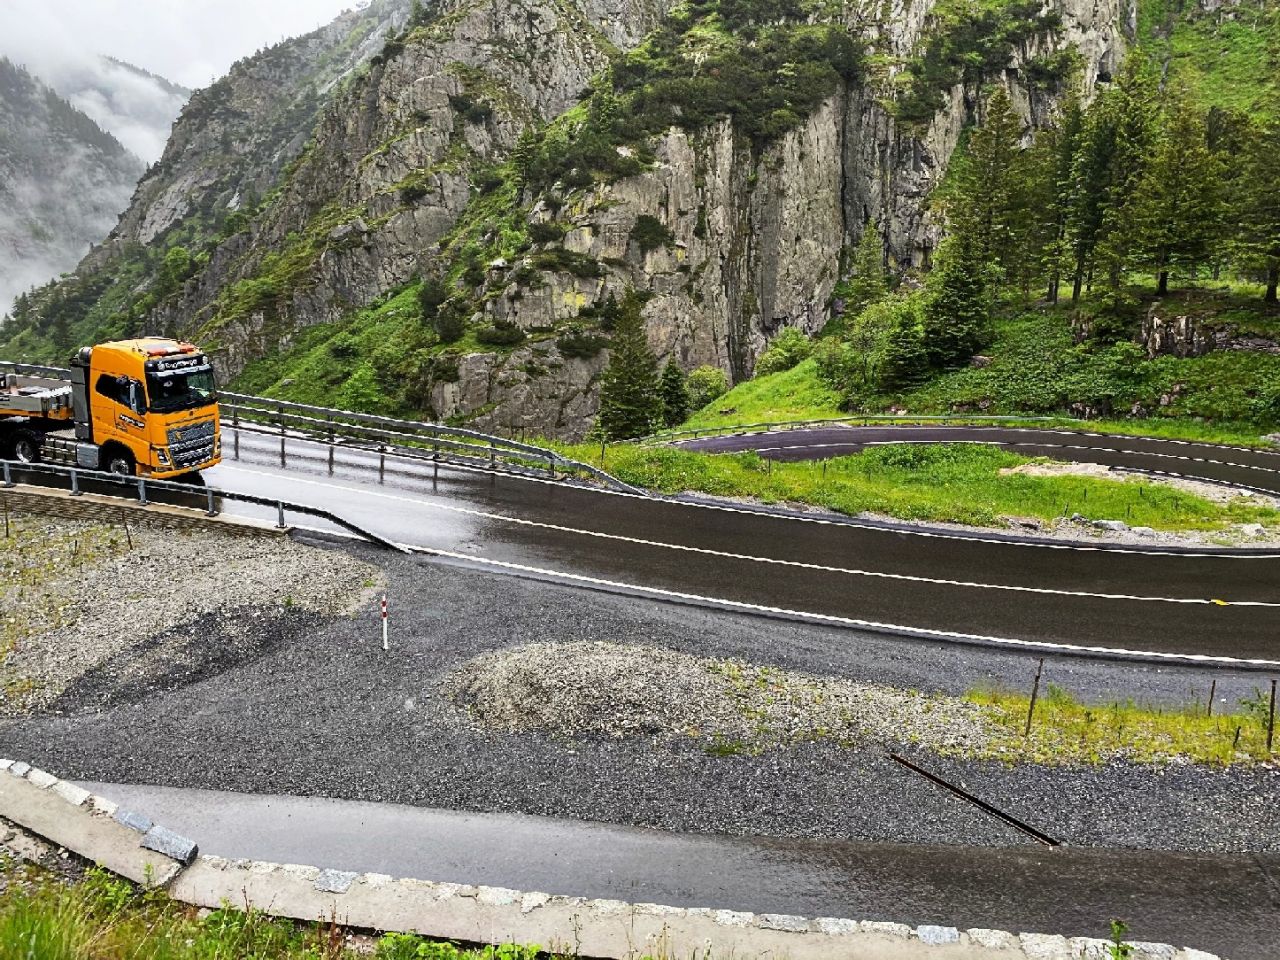 Transport von Windkraftwerkelementen auf den Gotthard